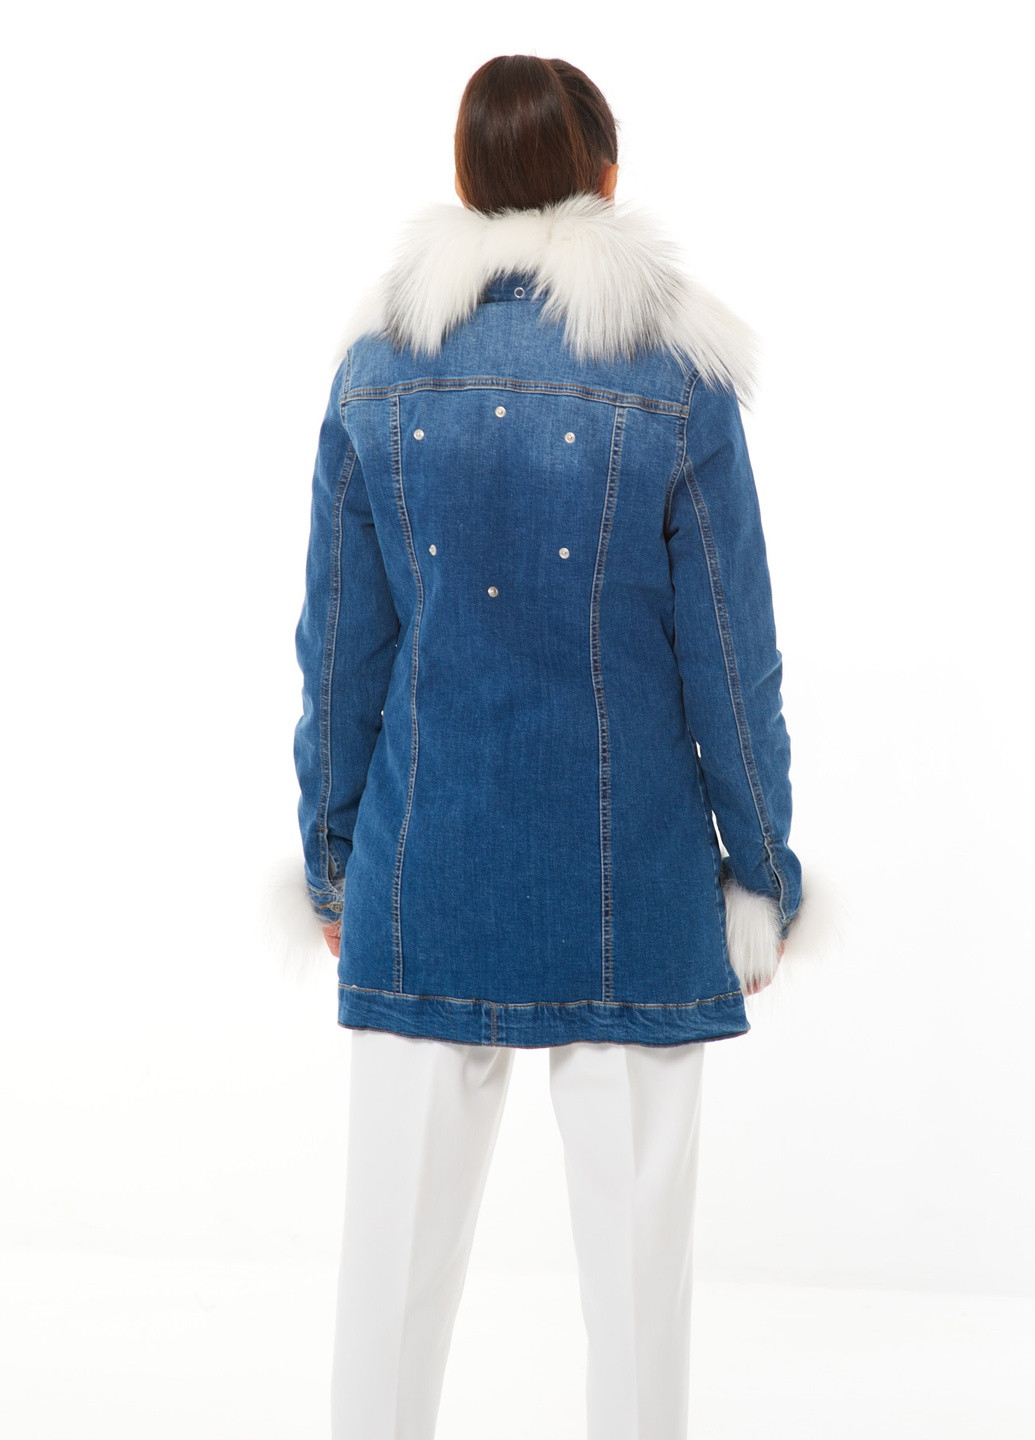 Синяя демисезонная утепленная джинсовая куртка джинс деним с натуральным съемным мехом зима осень shea голубая marble fox Actors